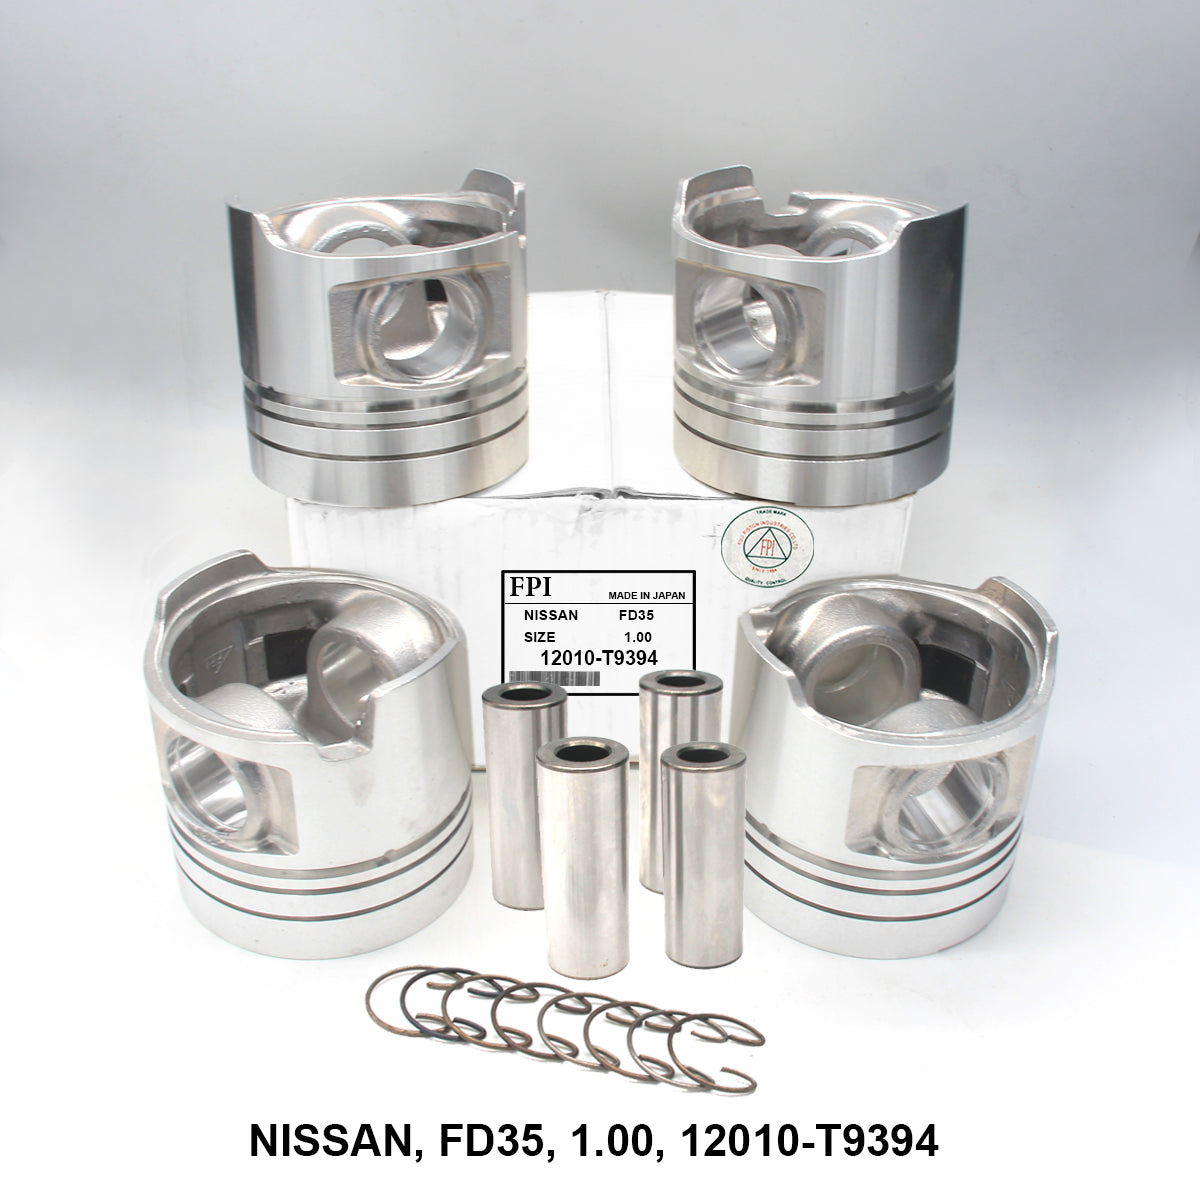 Piston W/Pin, FPI, FD35, 1.00, 12010-T9394 (001664)